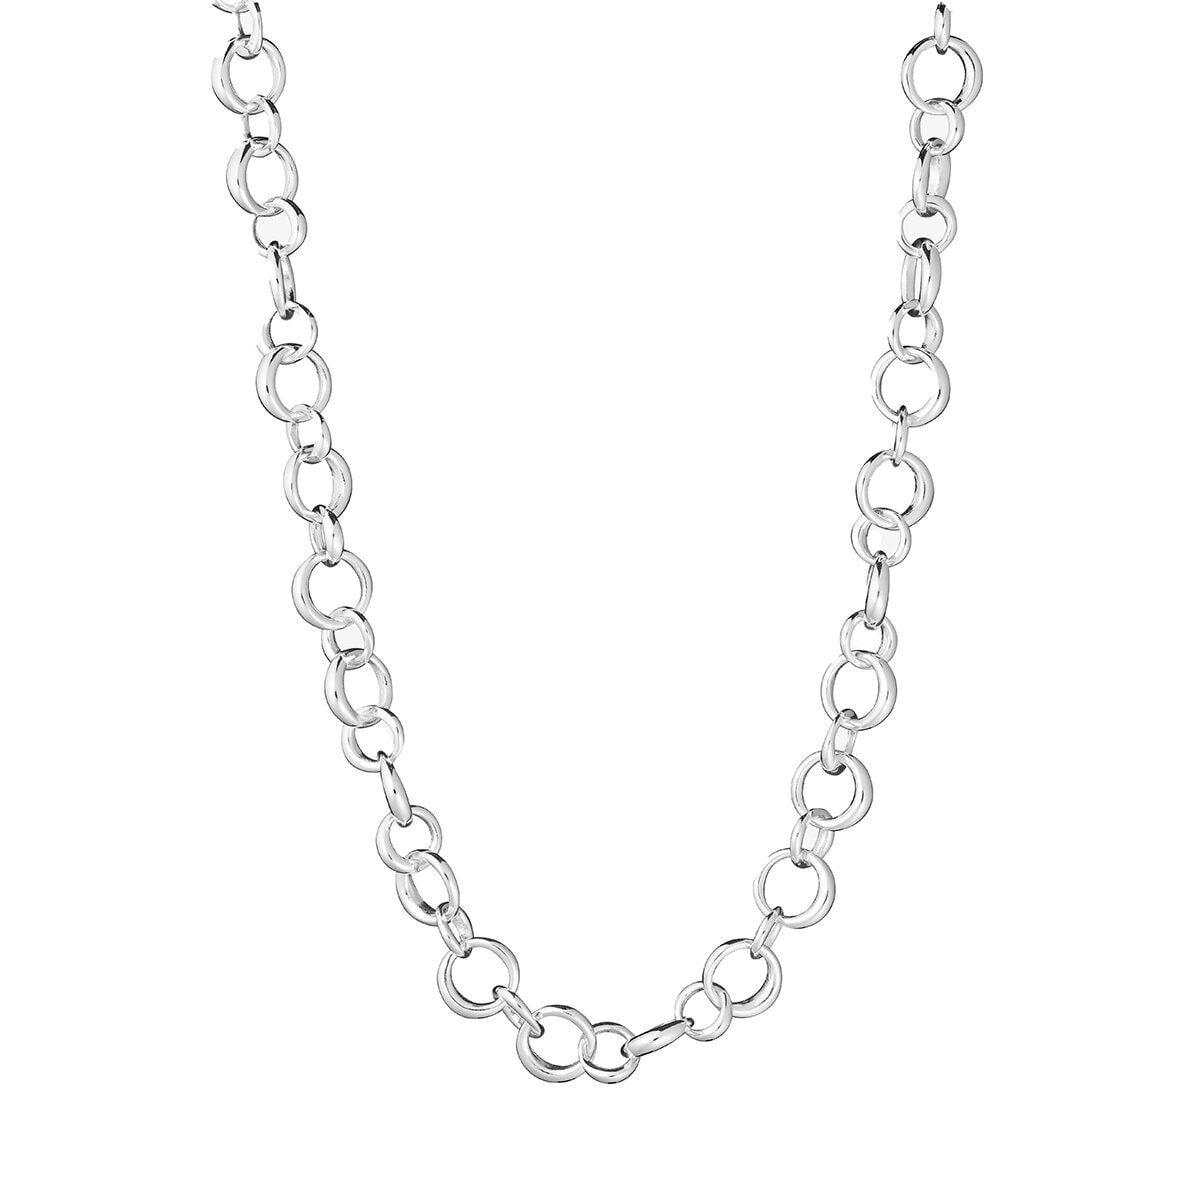 Les Amis drop chain necklace